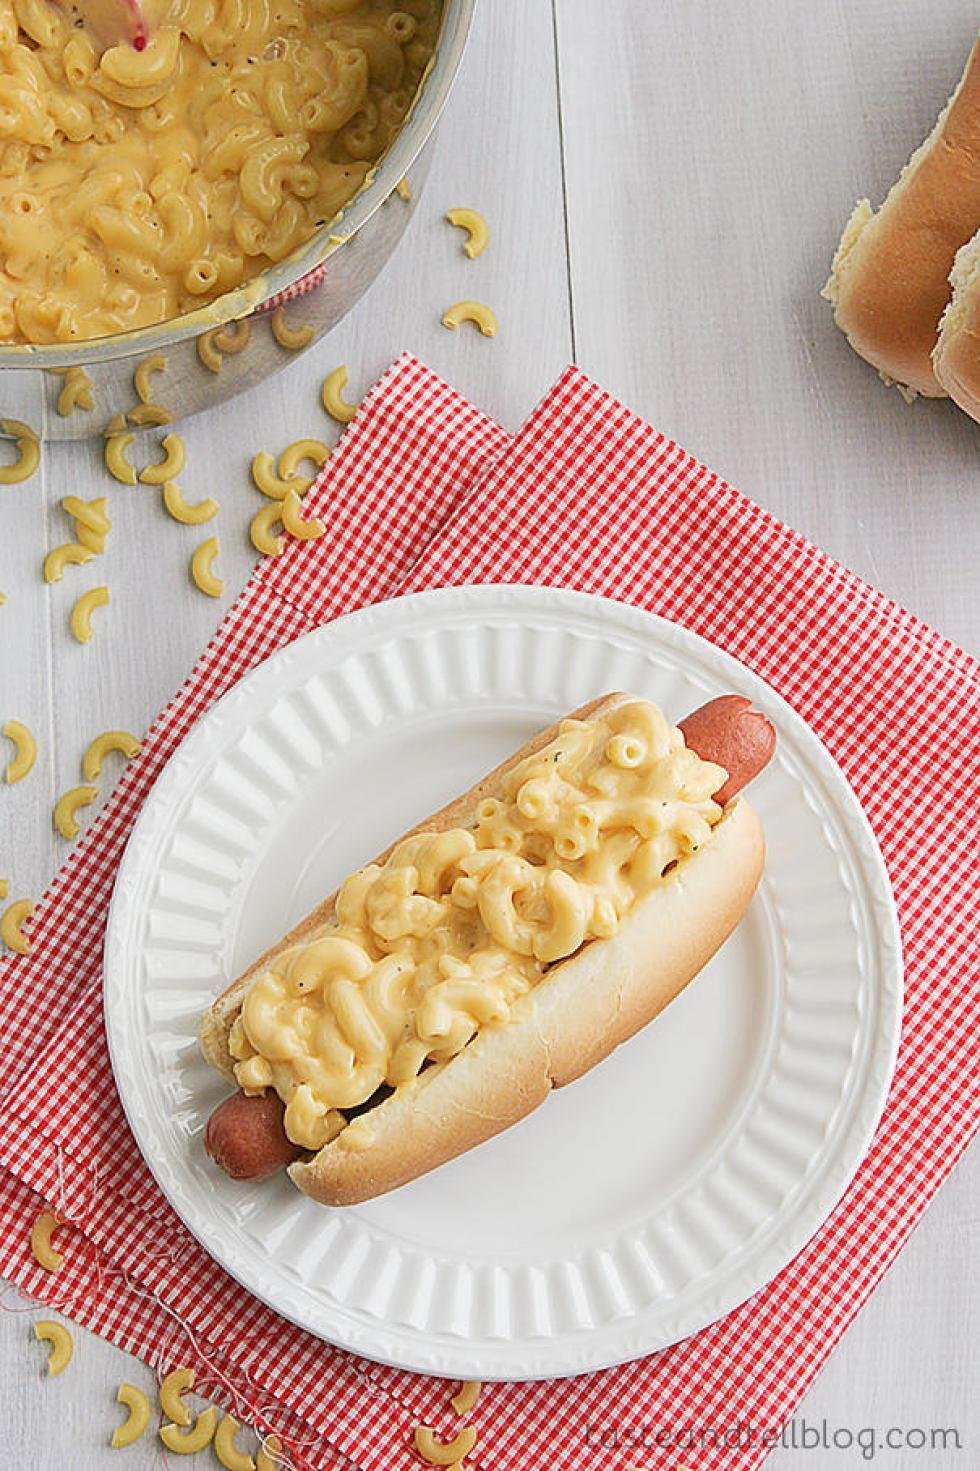 10 måder at lave den perfekte hotdog på